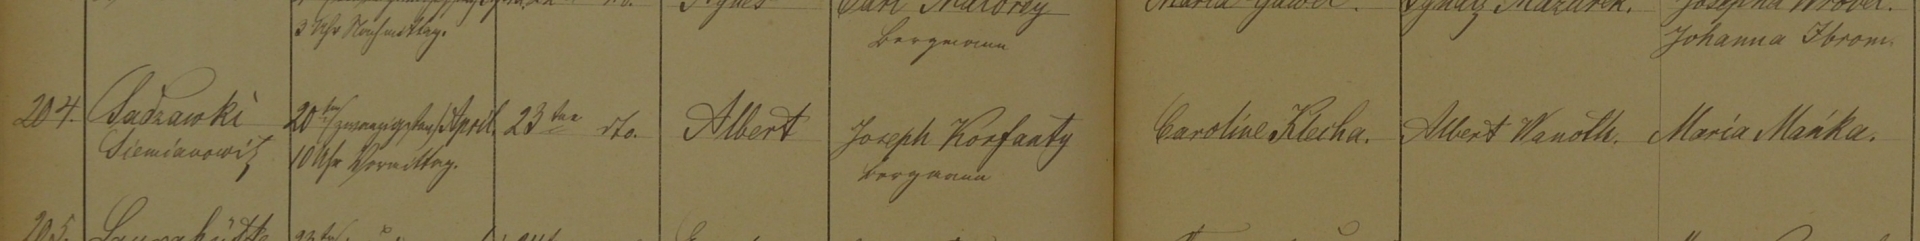  Akt chrztu Wojciecha Korfantego, 23 kwietnia 1873.  